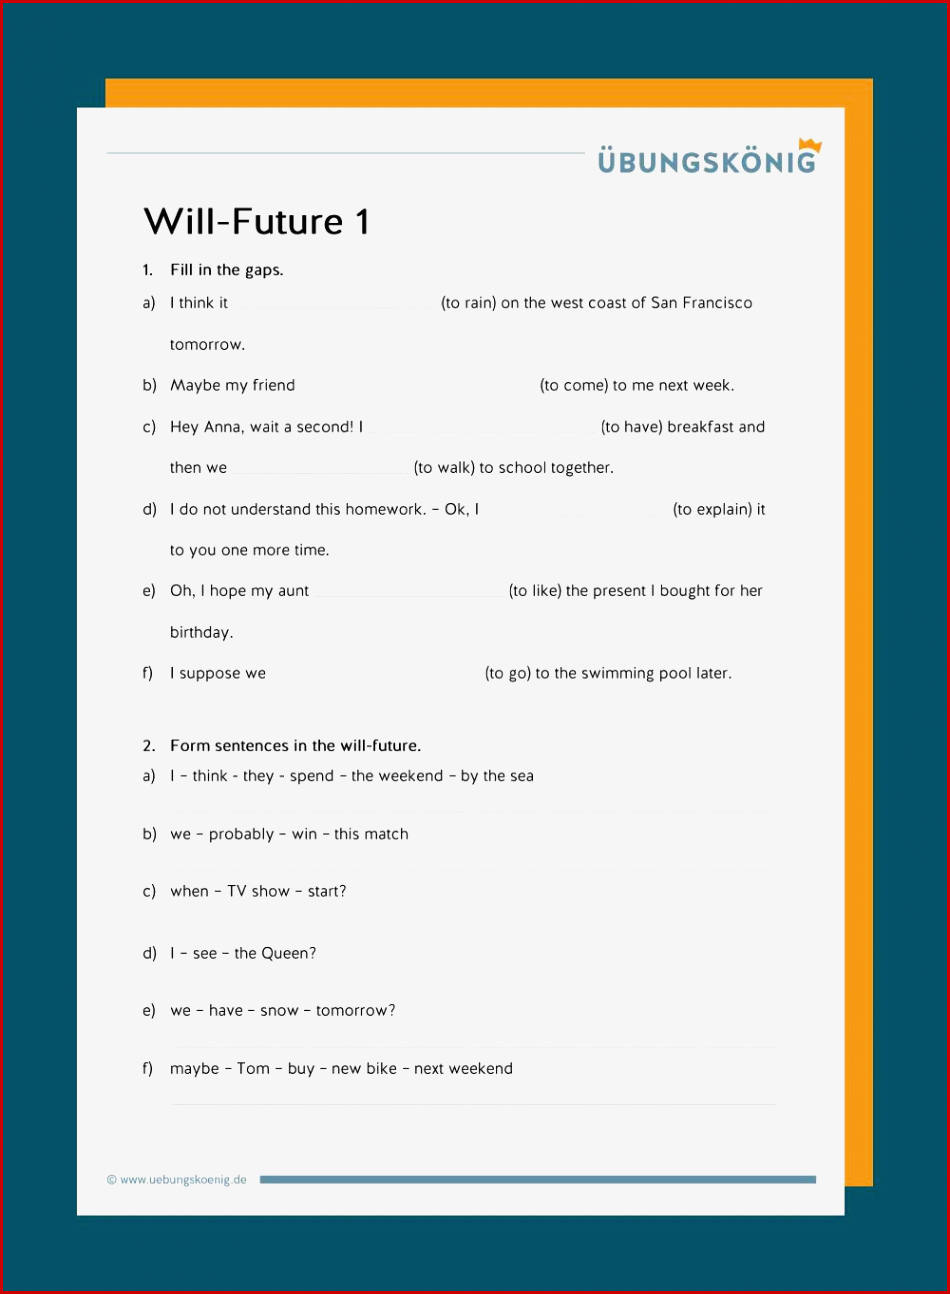 Will-future